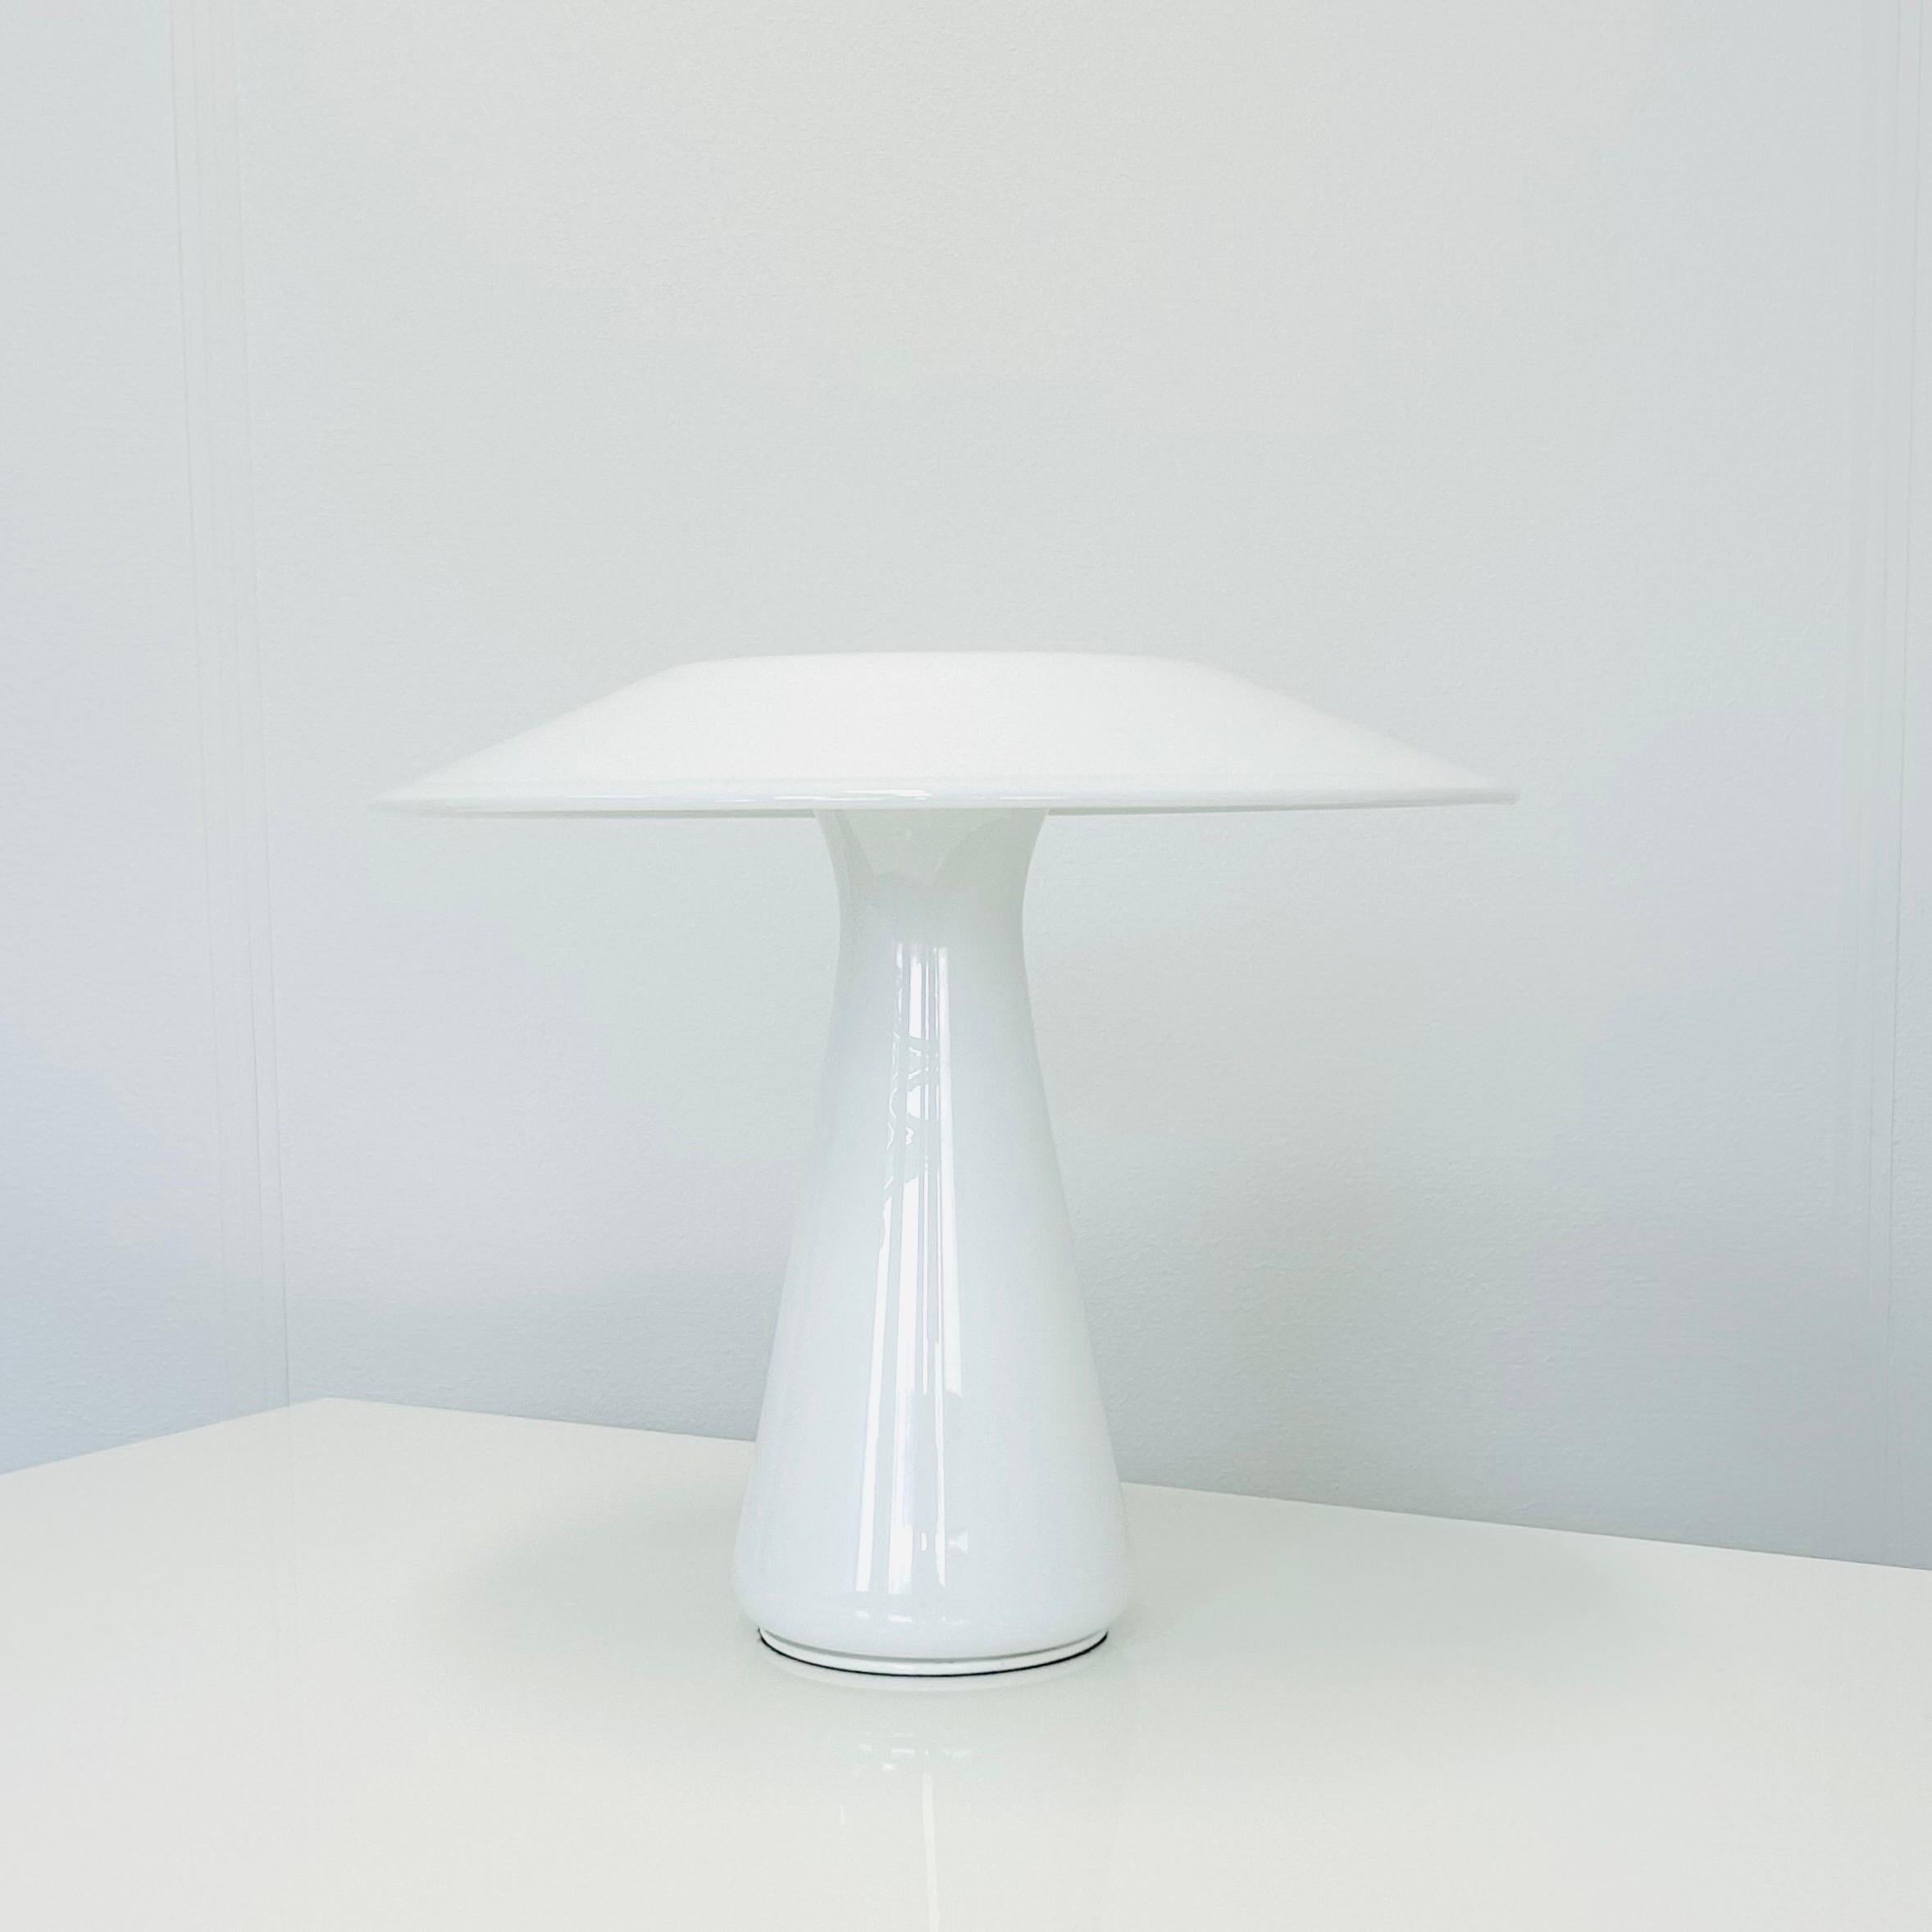 Lampe de bureau en verre blanc en forme de champignon, conçue par la designer Sidse Werner pour la société danoise Holmegaard Glasværk en 1985. Il s'appelle 